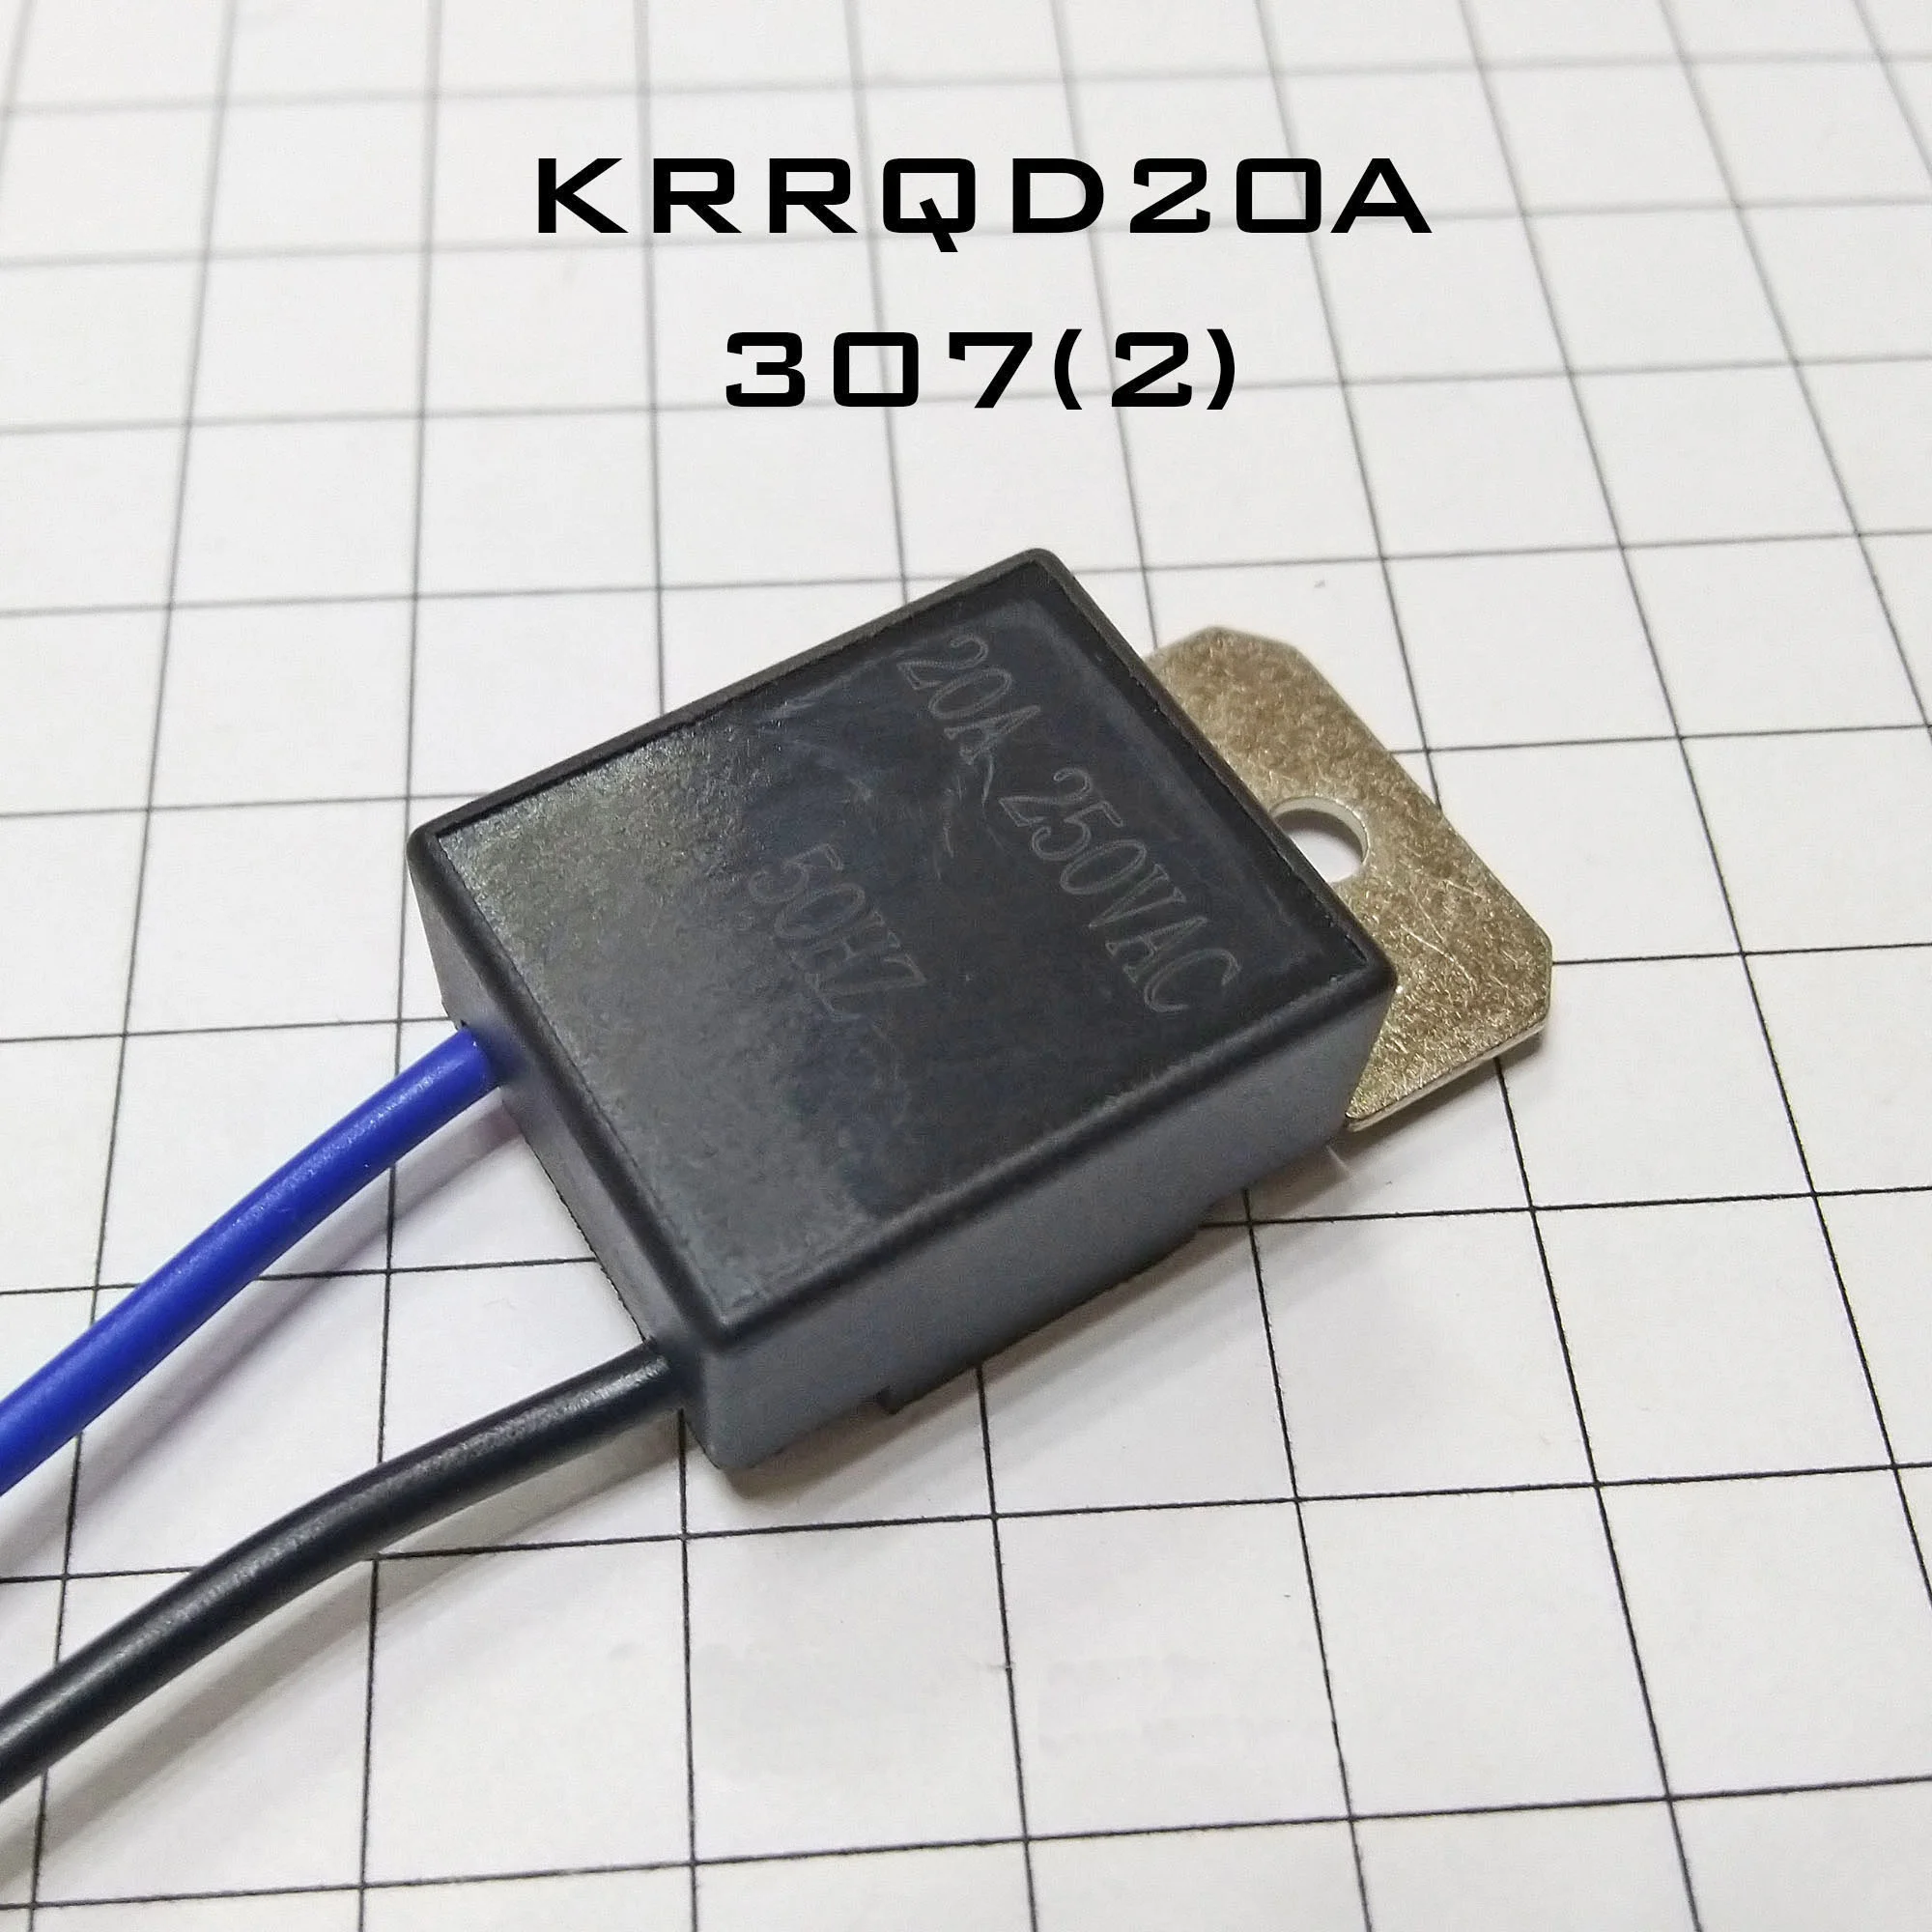 307(2)  пуск, подходит для всех видов УШМ, электропил KRRQD20A .